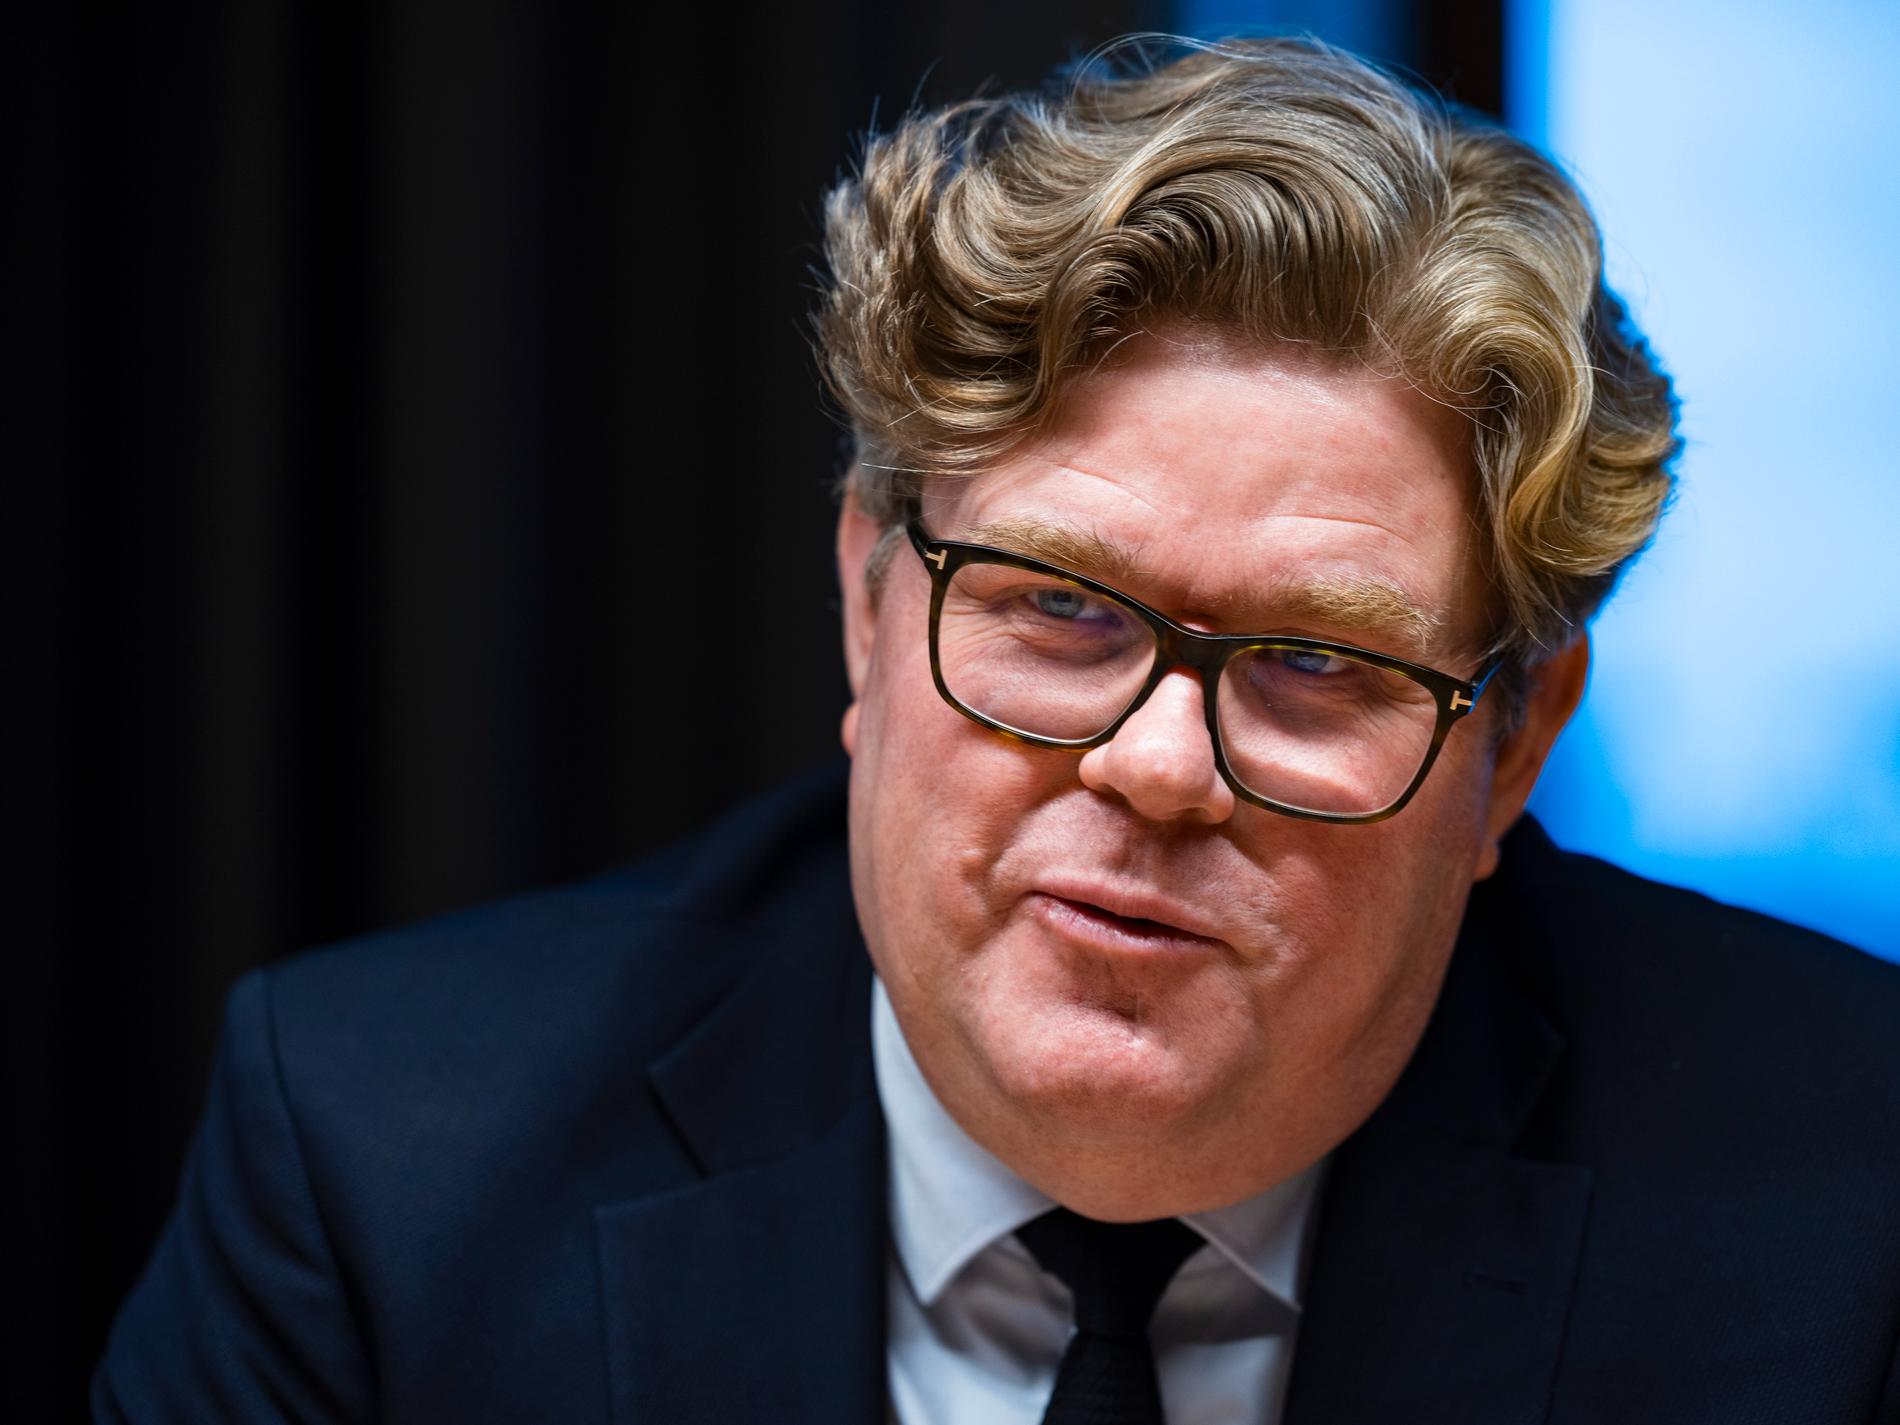 Gunnar Strömmer var Moderaternas partisekreterare från 2017 fram tills att han utsågs till justitieminister efter valet 2022.